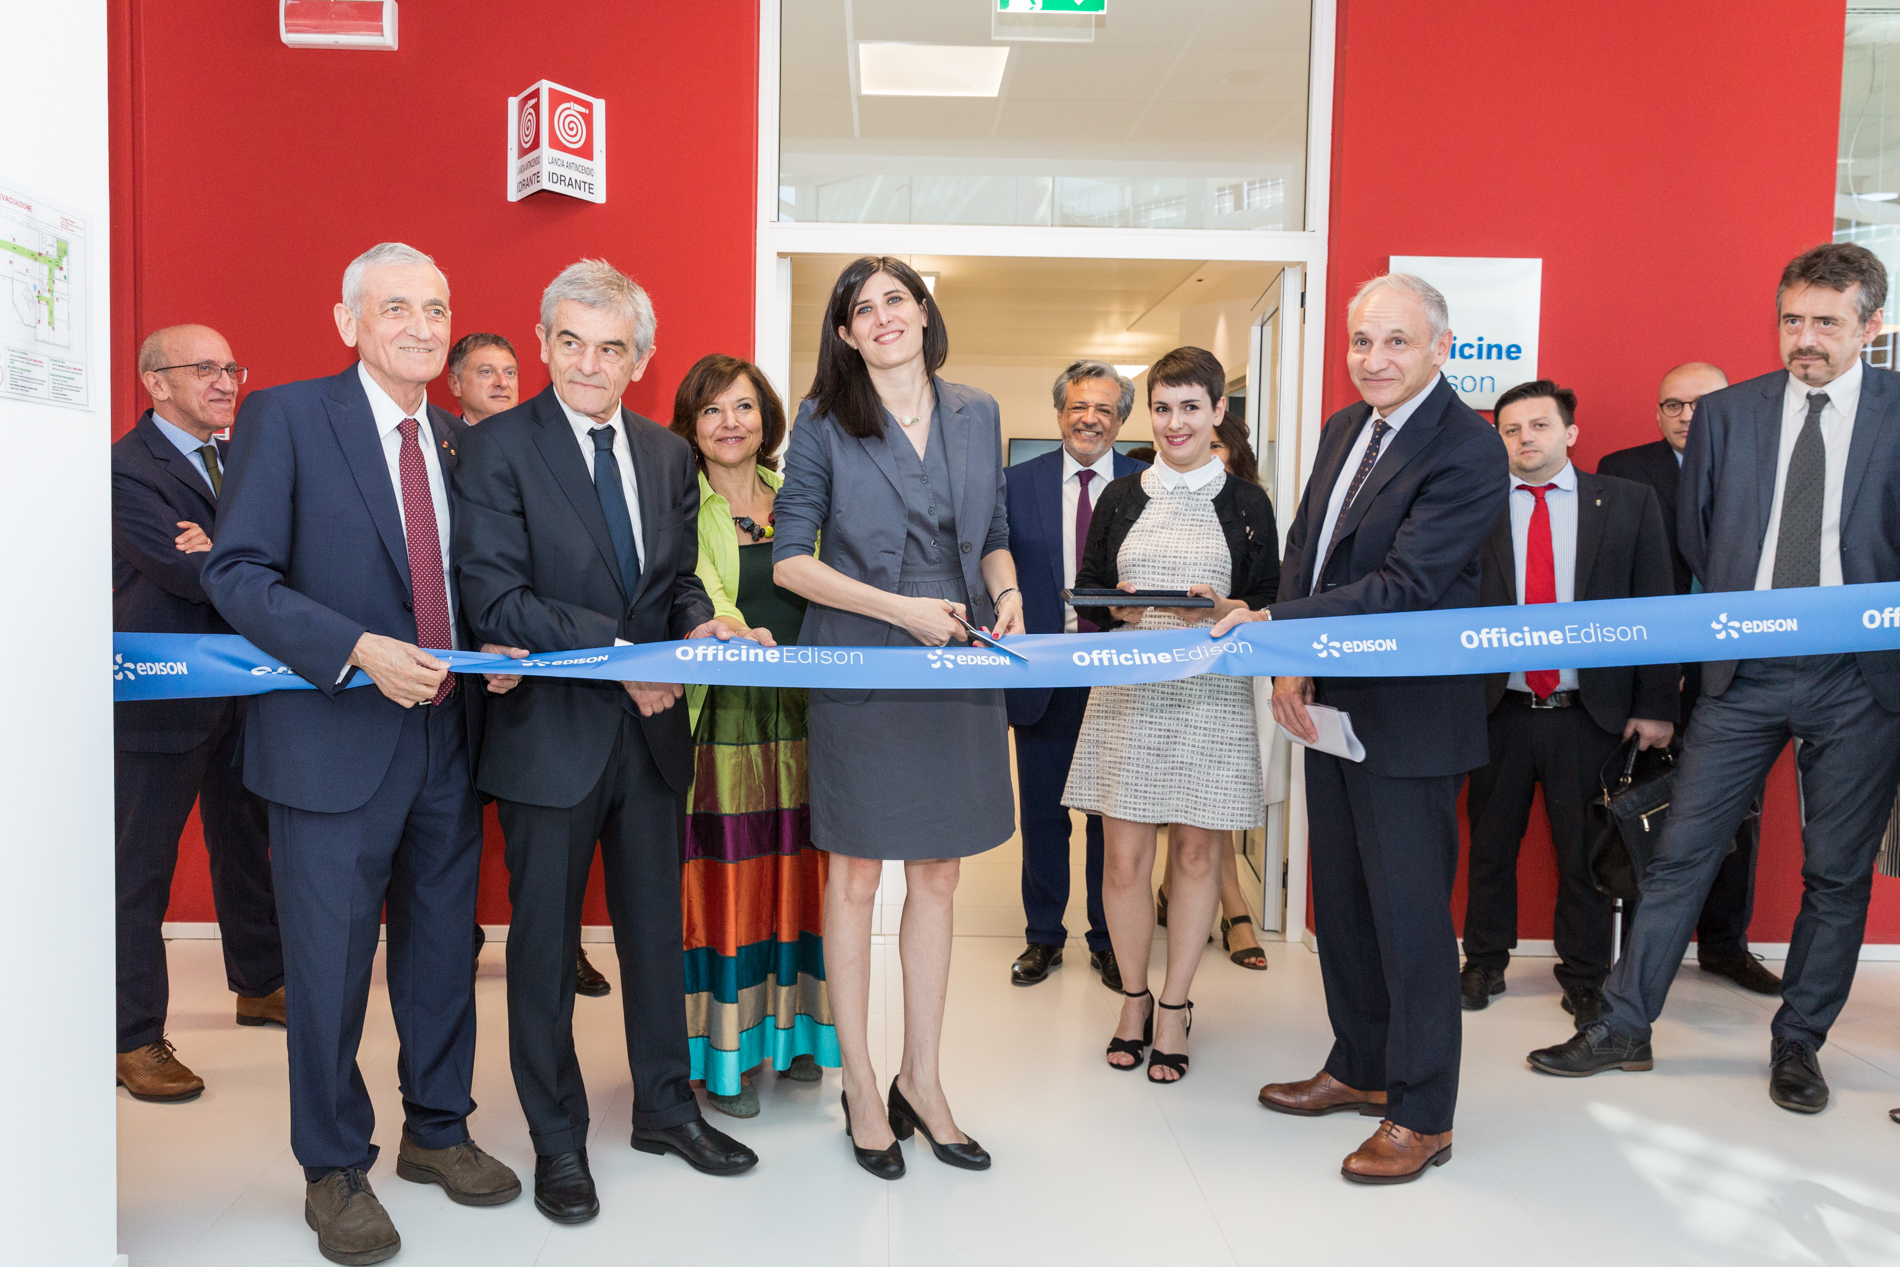 Edison inaugura le 'Officine' a Torino: uno spazio polifunzionale dedicato a innovazione, ricerca e sviluppo in collaborazione con il Politecnico e le istituzioni locali